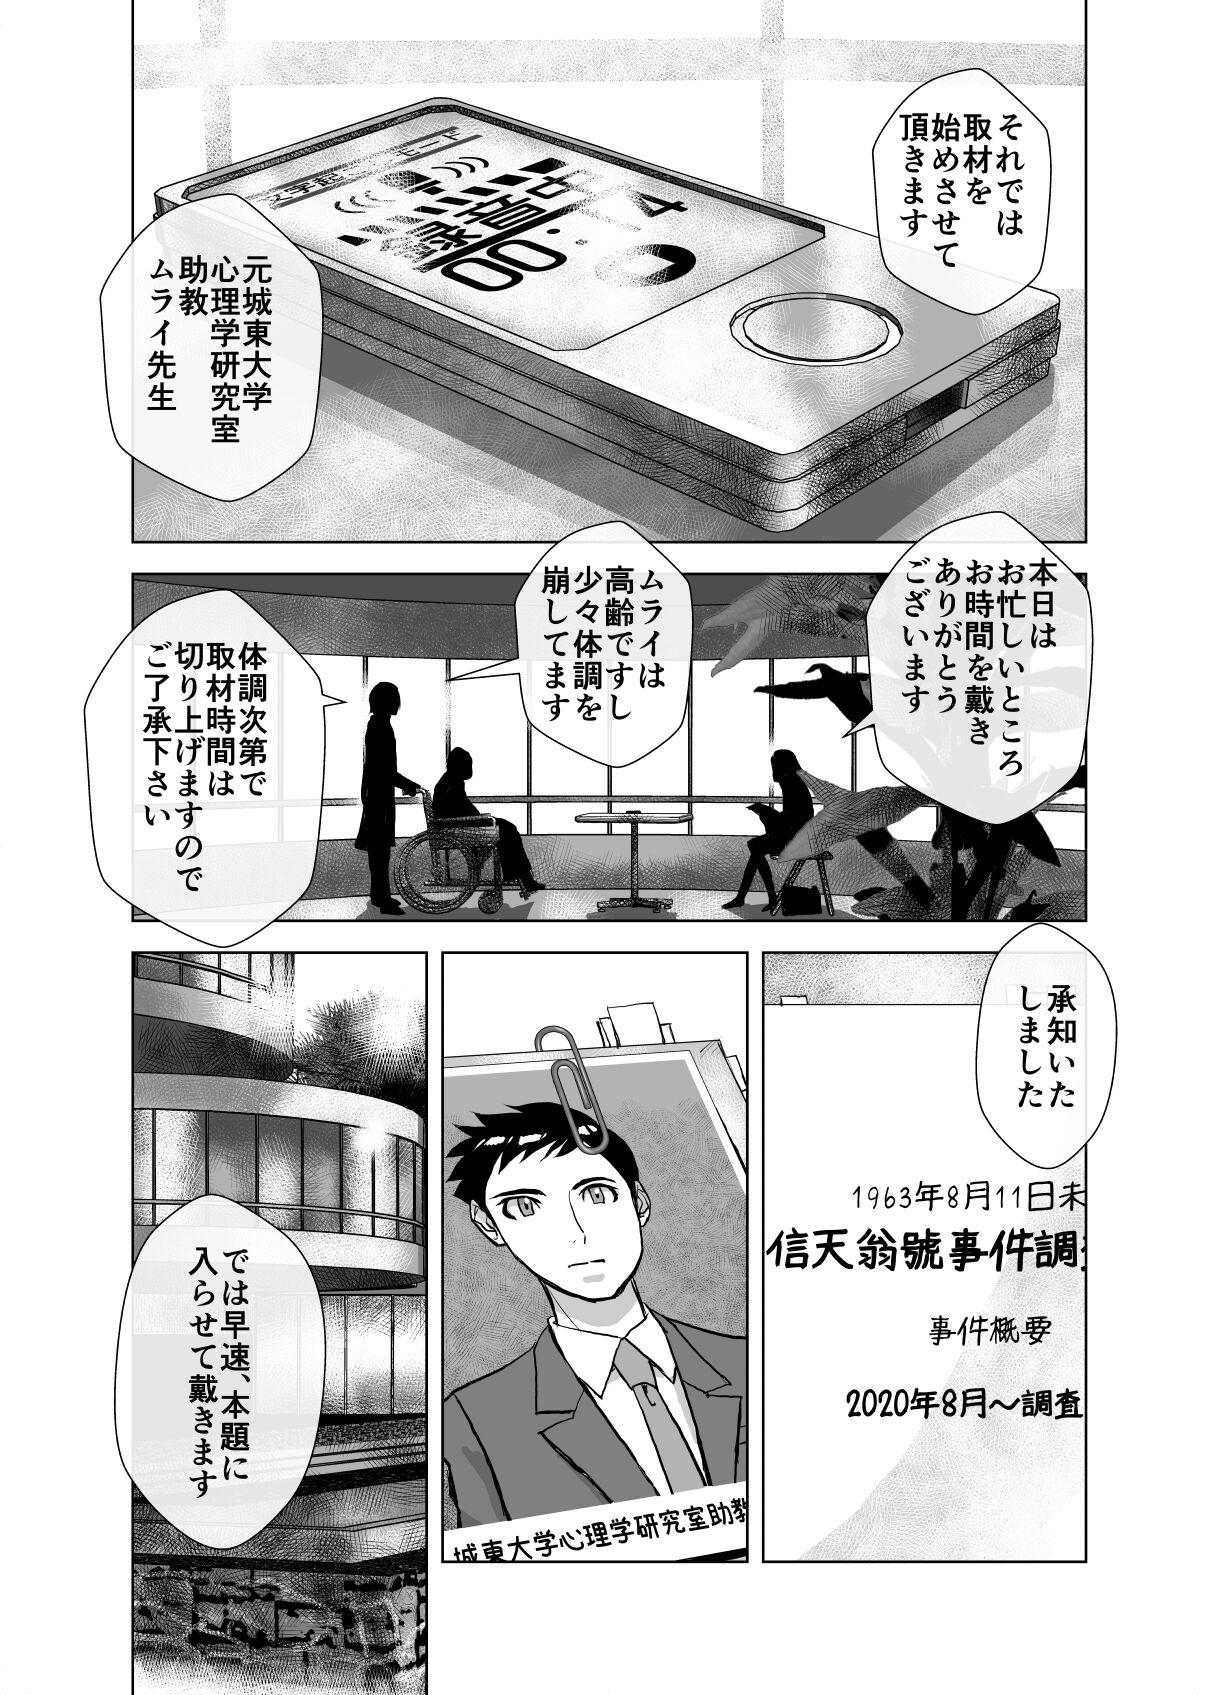 Firsttime BEYOND ~ Aisubeki Kanata no Hitobito 6 - Original Sfm - Page 6